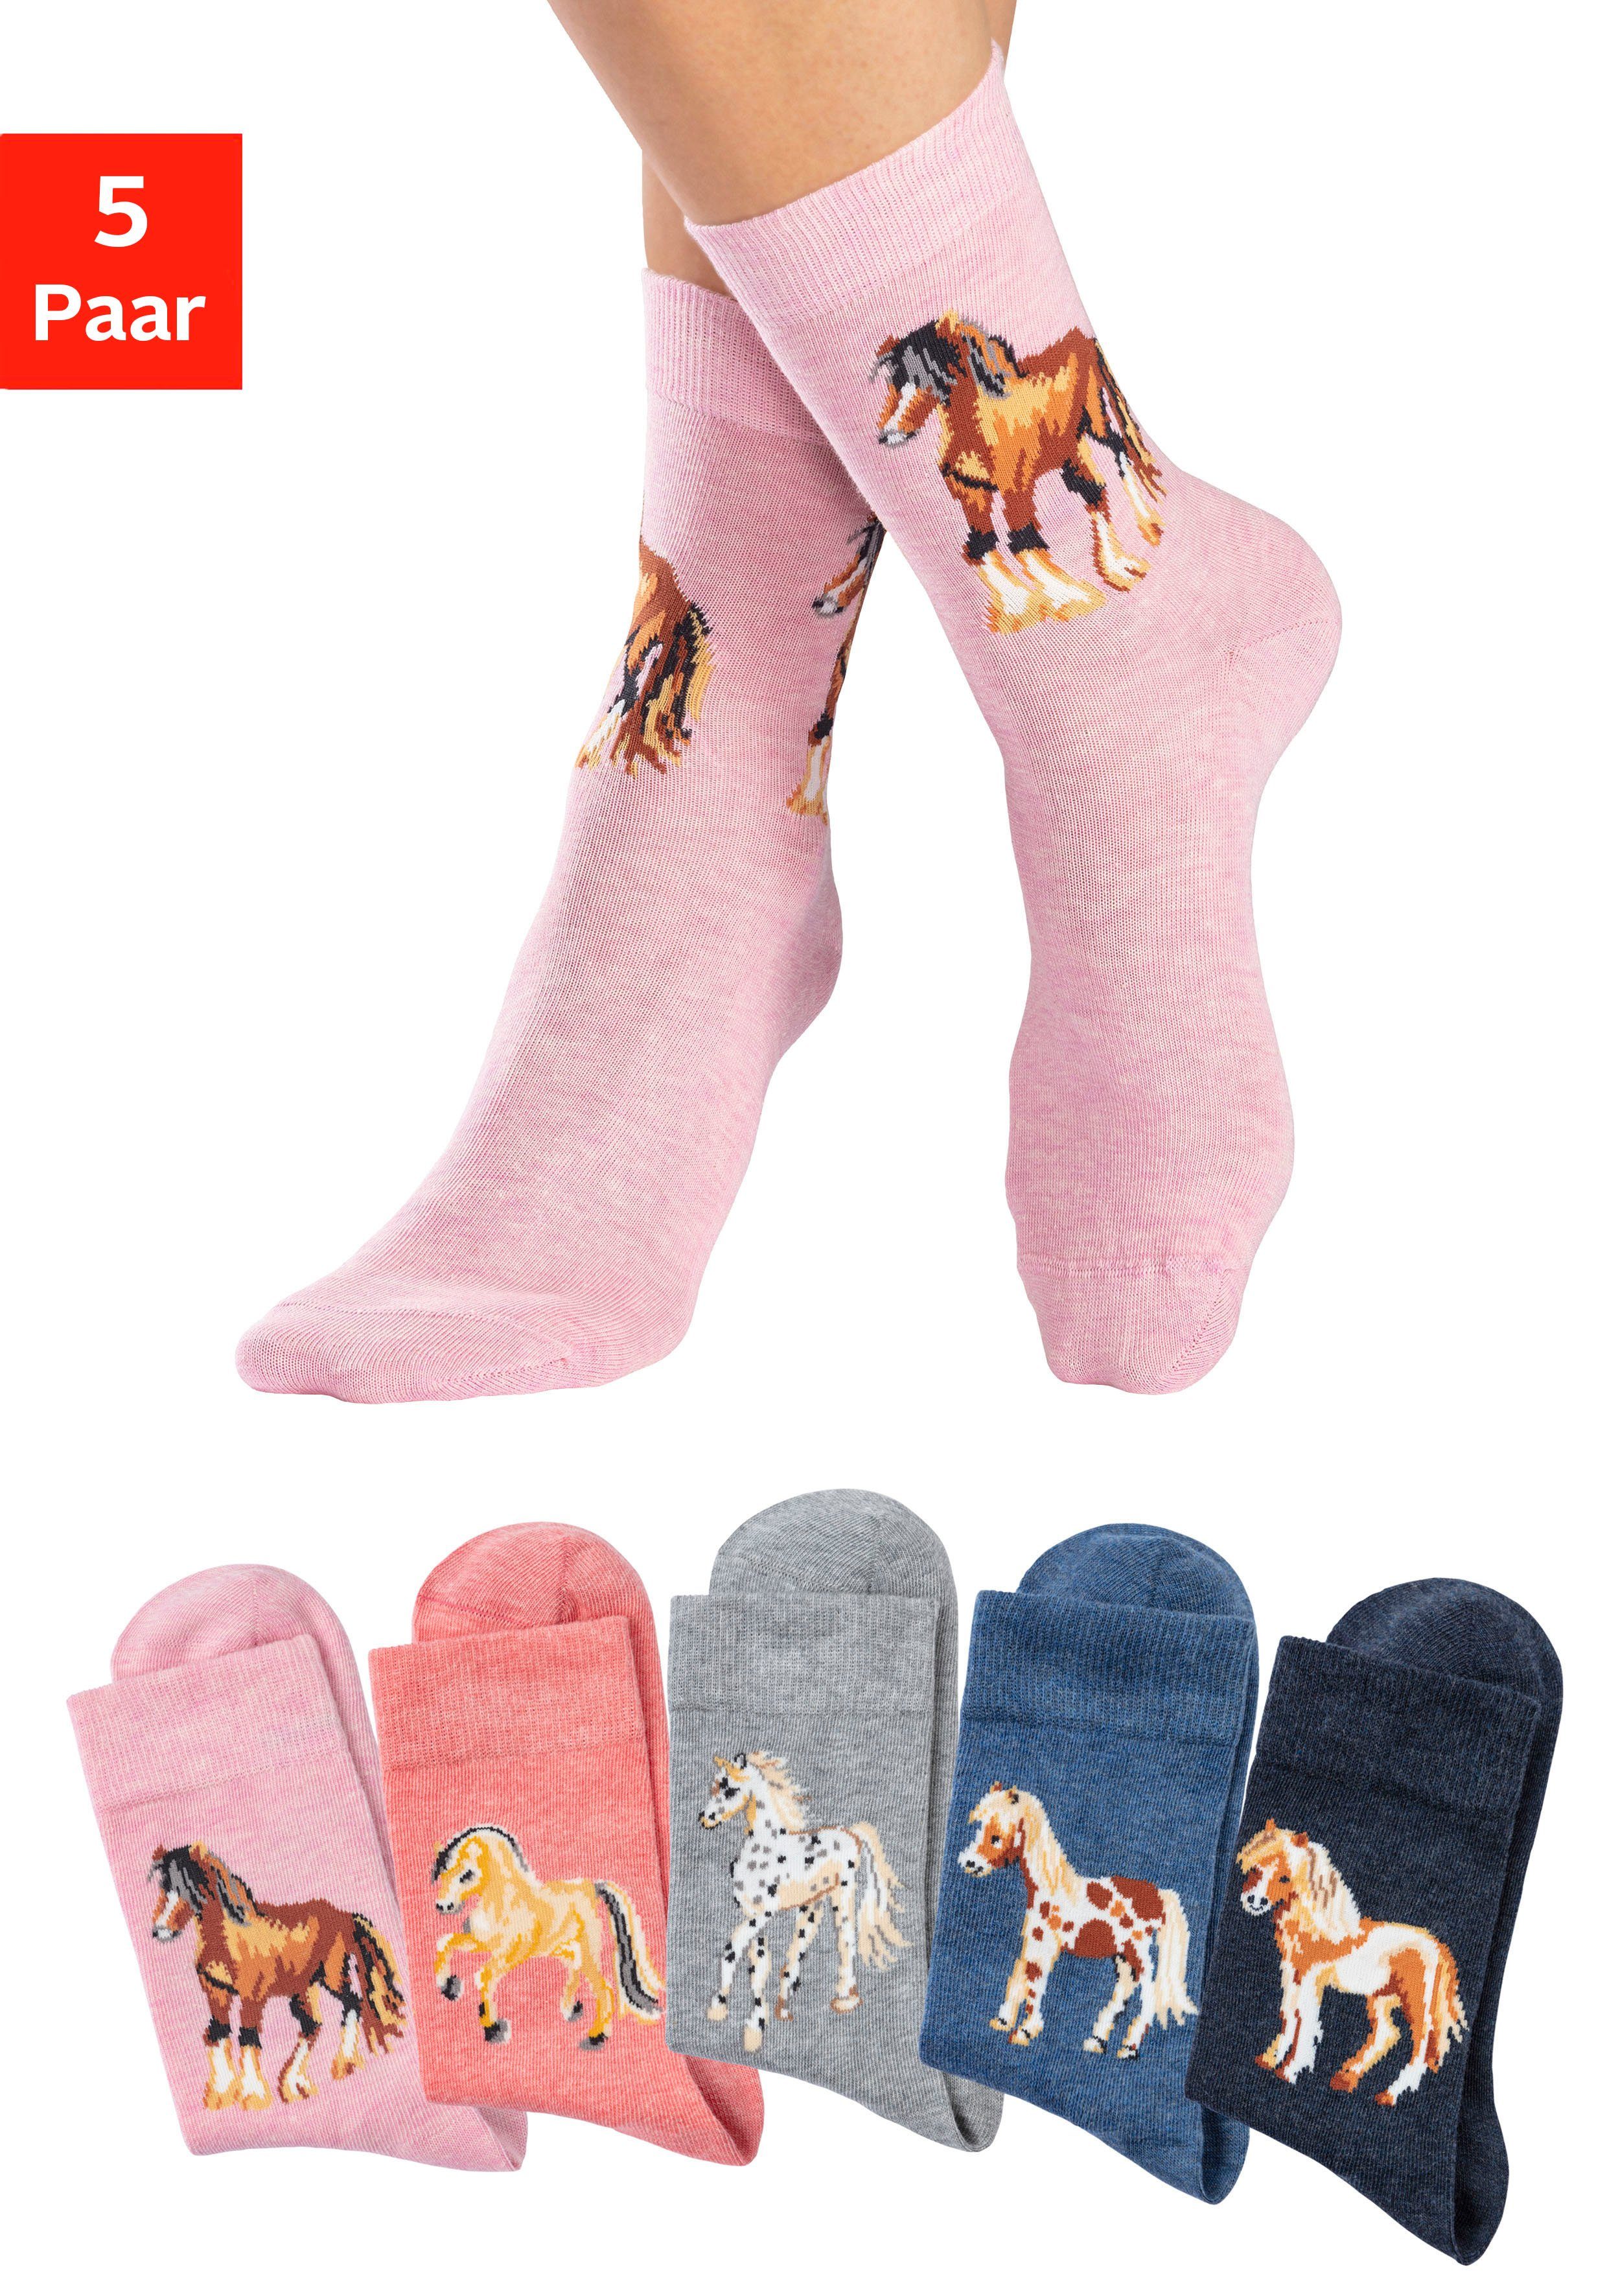 [Niedrigster Preis! Großer Rabatt!] H.I.S Socken (5-Paar) Mit unterschiedlichen Pferdemotiven